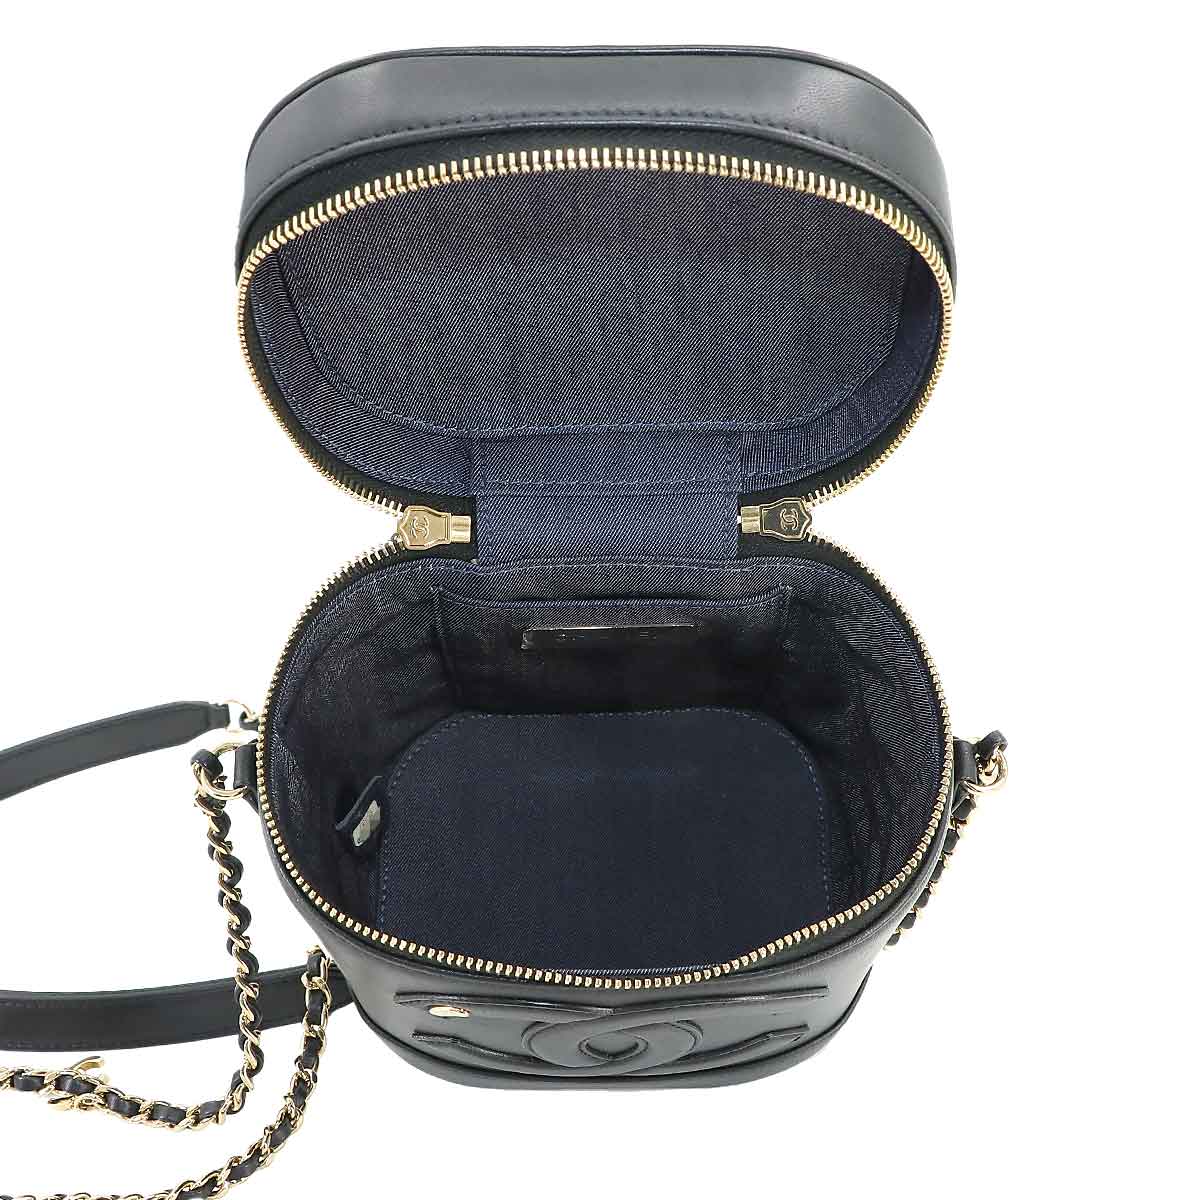  как новый Chanel CHANEL vanity 2way рука цепь сумка на плечо кожа черный AS0323 Gold металлические принадлежности Vanity Bag 90229561